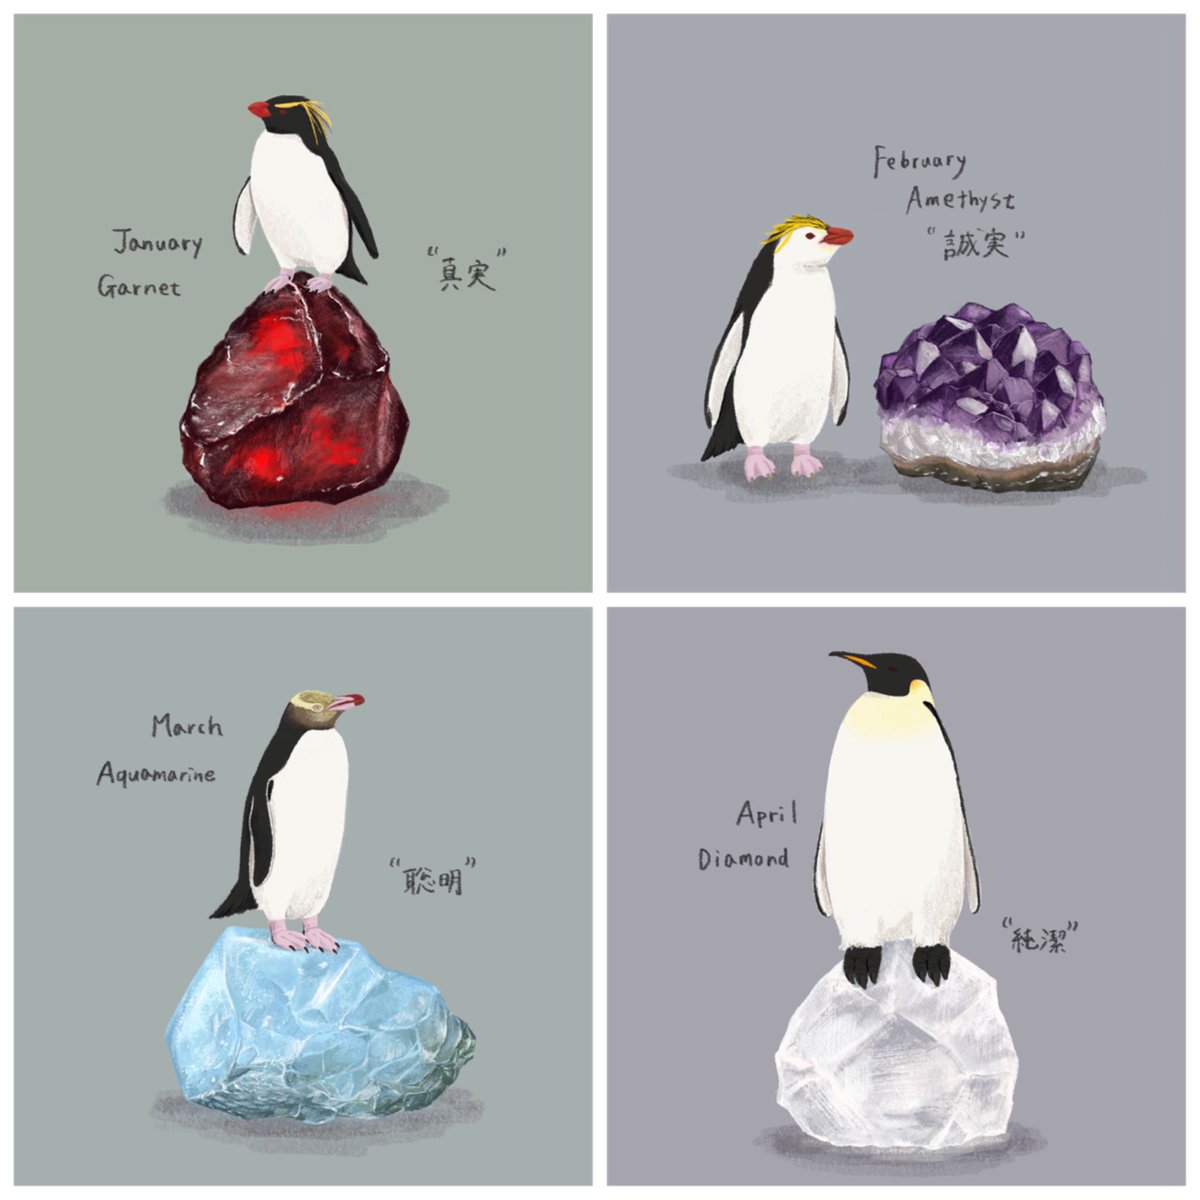 ペンギン描くの飽きないなあ🐧
#今月描いた絵を晒そう #ペンギン 